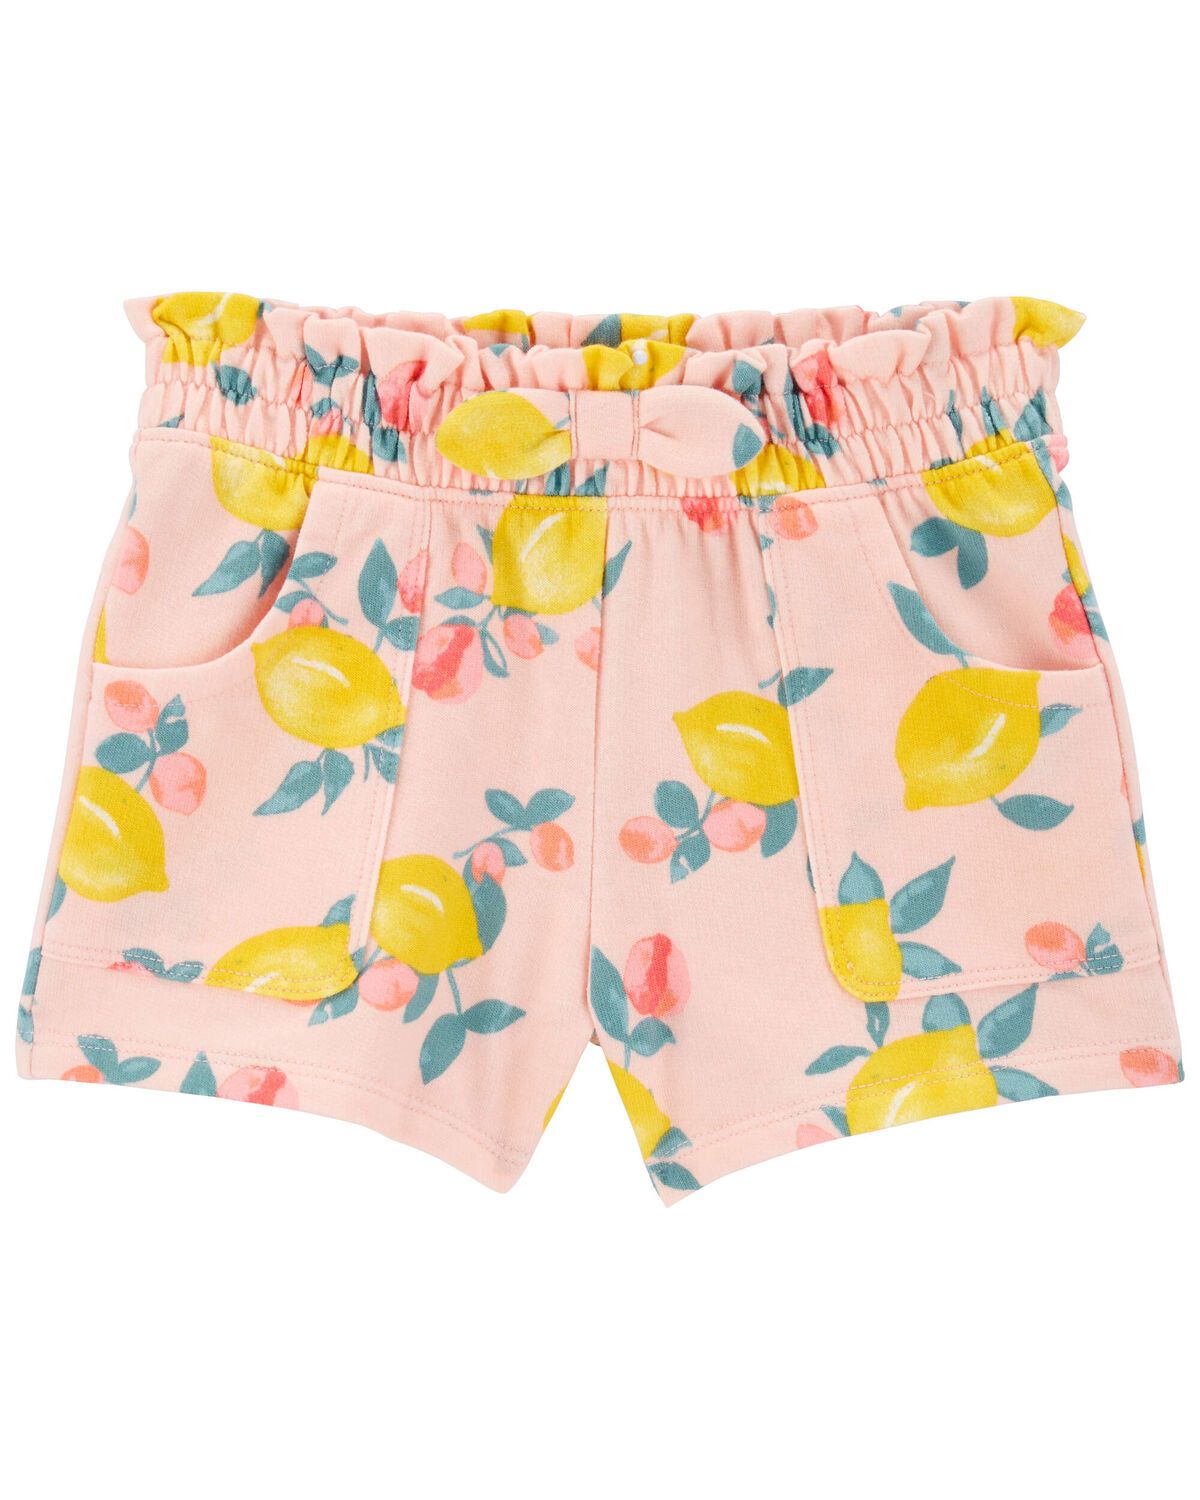 Toddler Lemon Print Pull-On Shorts | Carter's